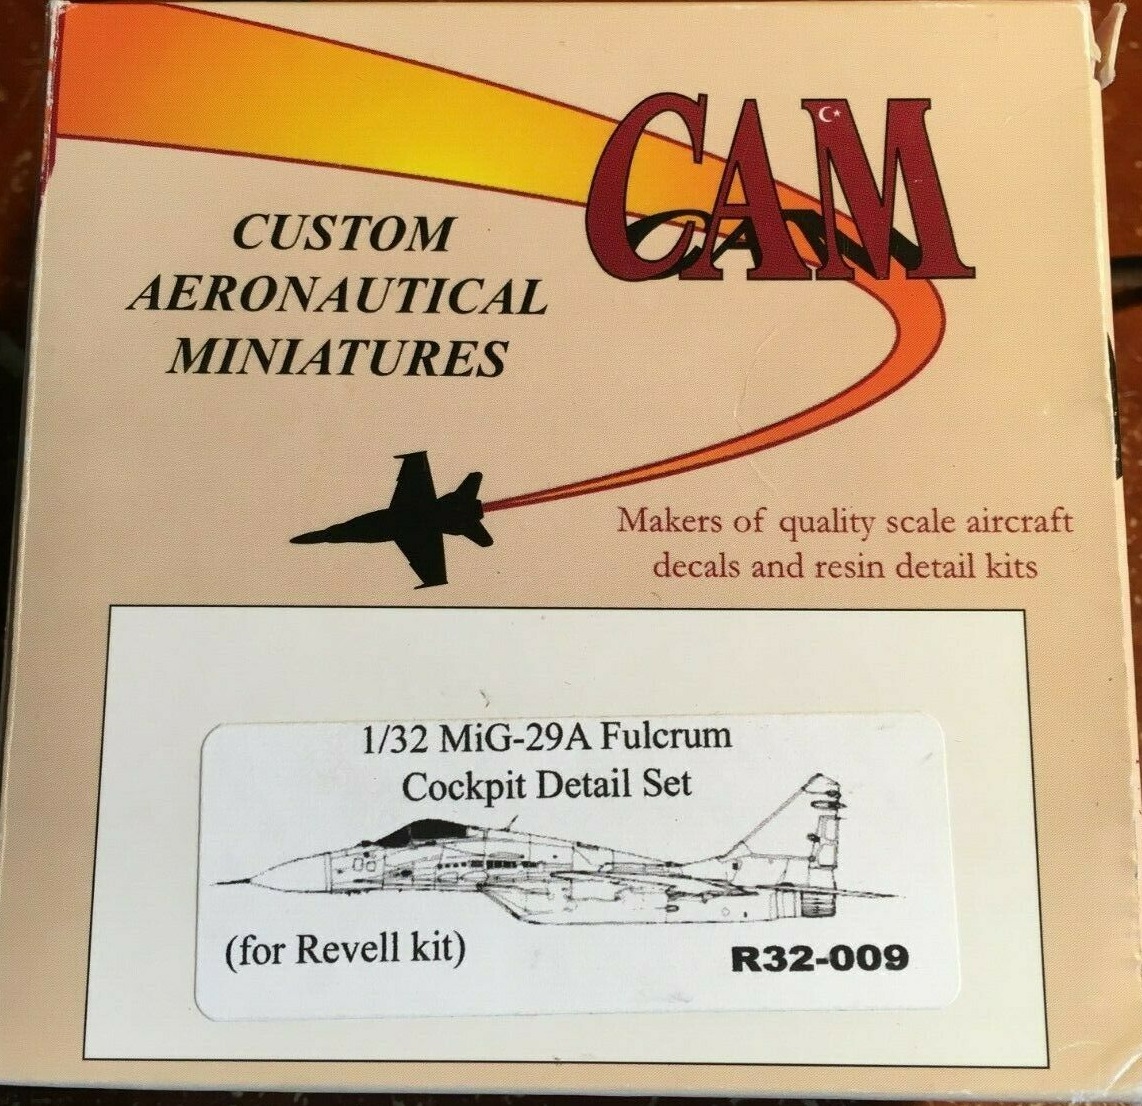 Производитель Custom Aeronautical Miniatures Cam